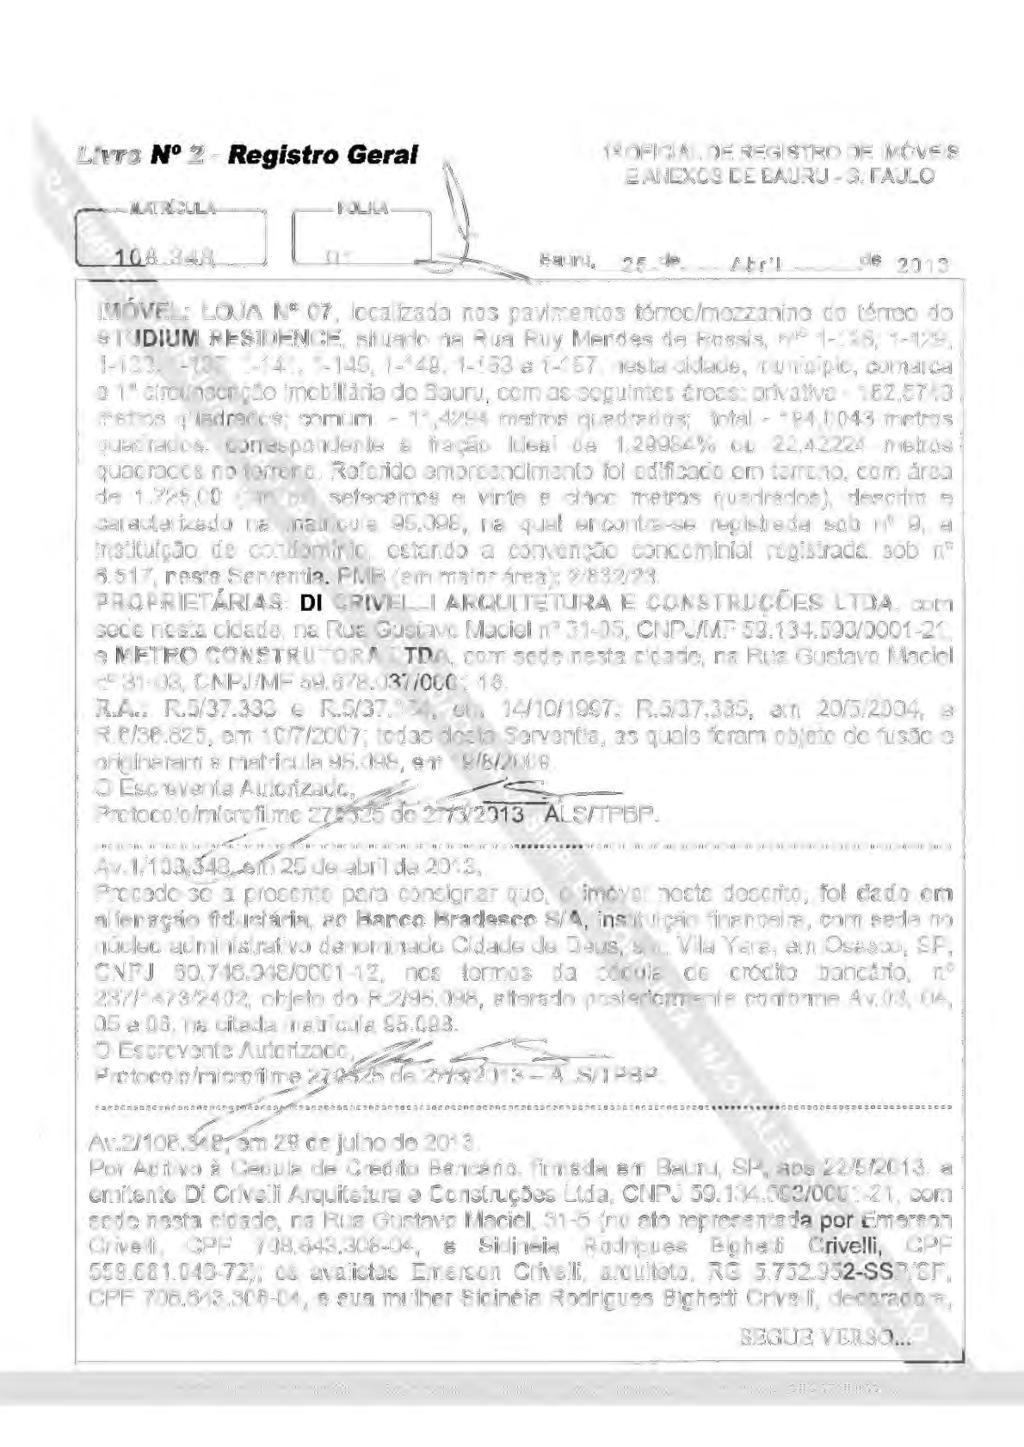 Livro N 2 - Registro Geral 1~ OFICIAL DE REGISTRO DE IMÓVEIS E ANEXOS DE BAURU - S.